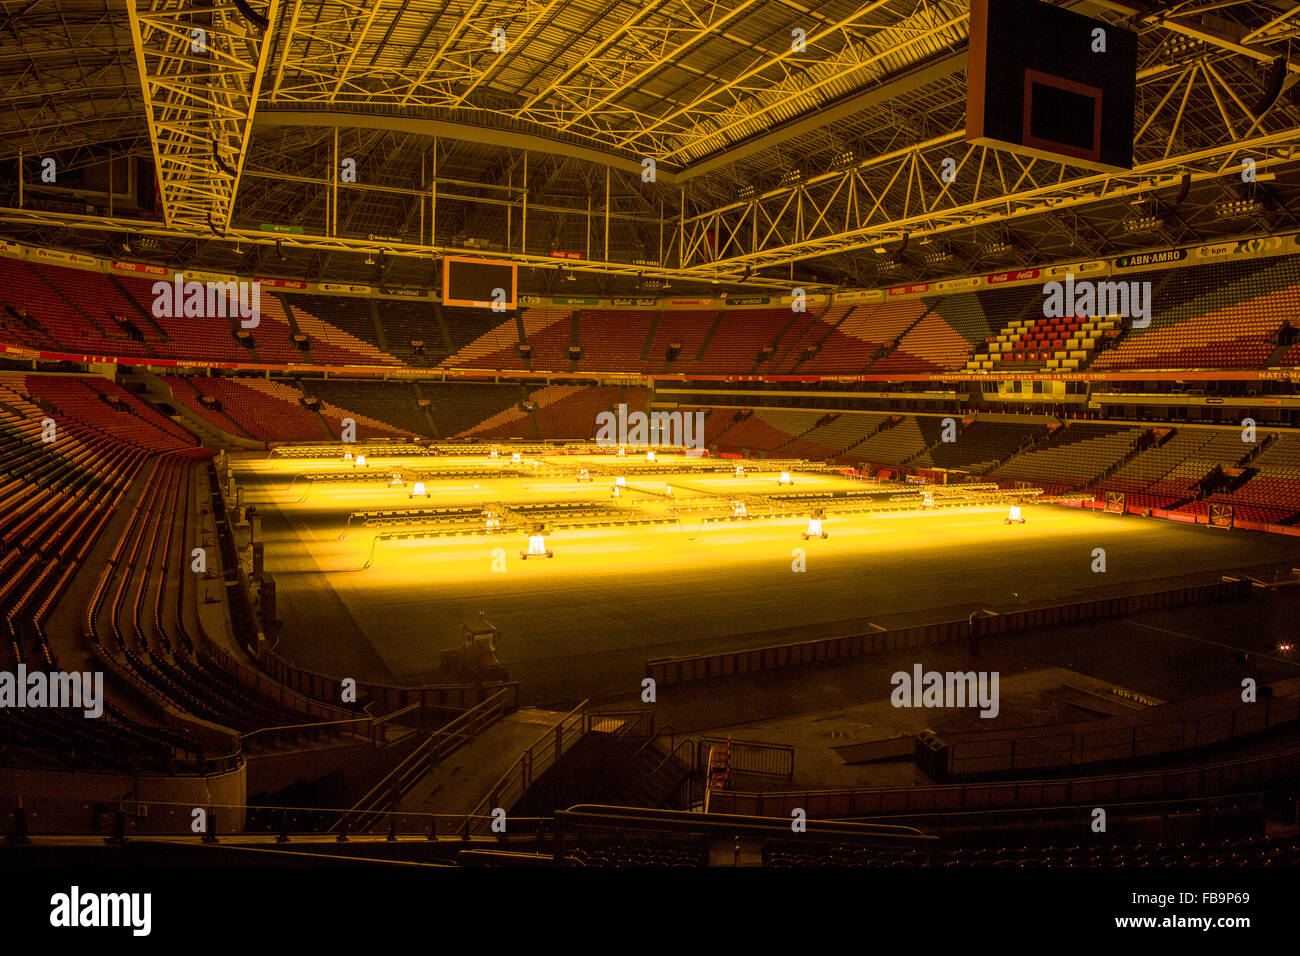 Arena à Amsterdam, l'accueil du stade de football de l'équipe néerlandaise Ajax Banque D'Images